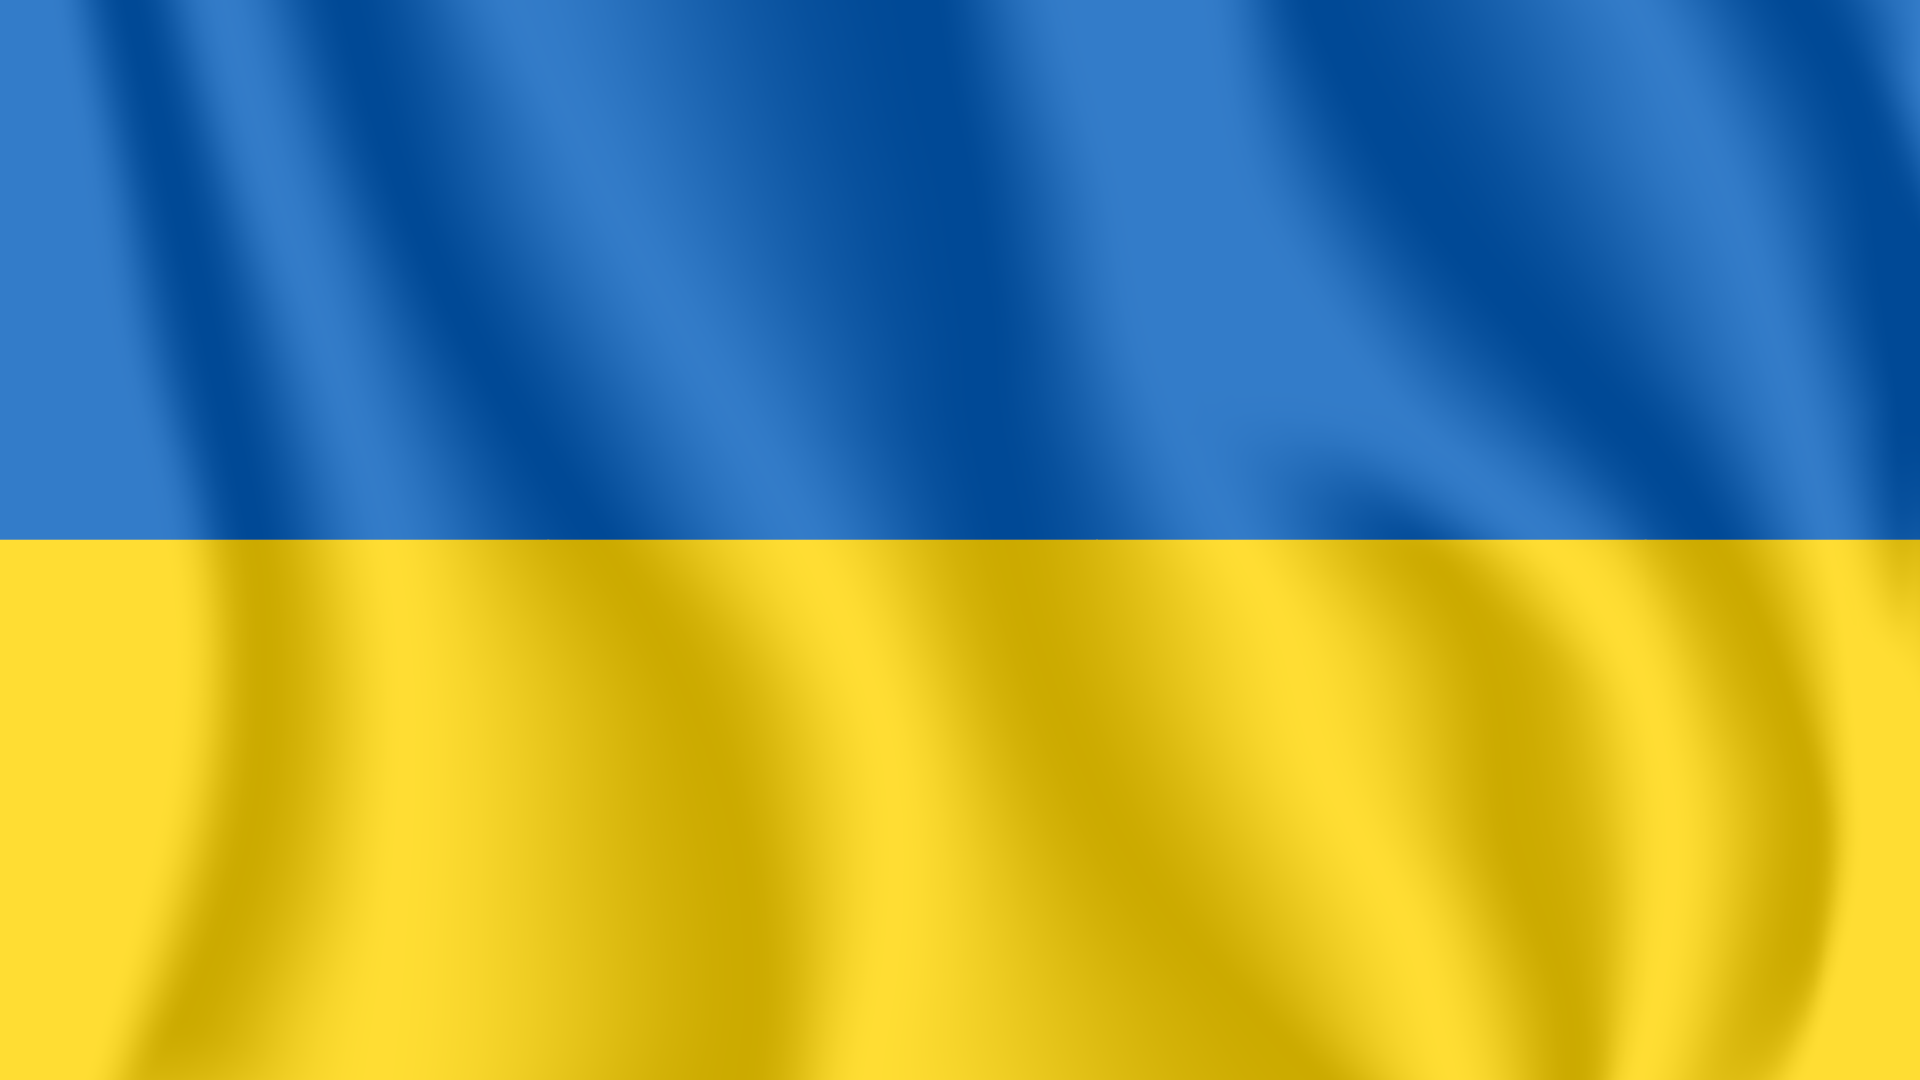 Det ukrainske flagg